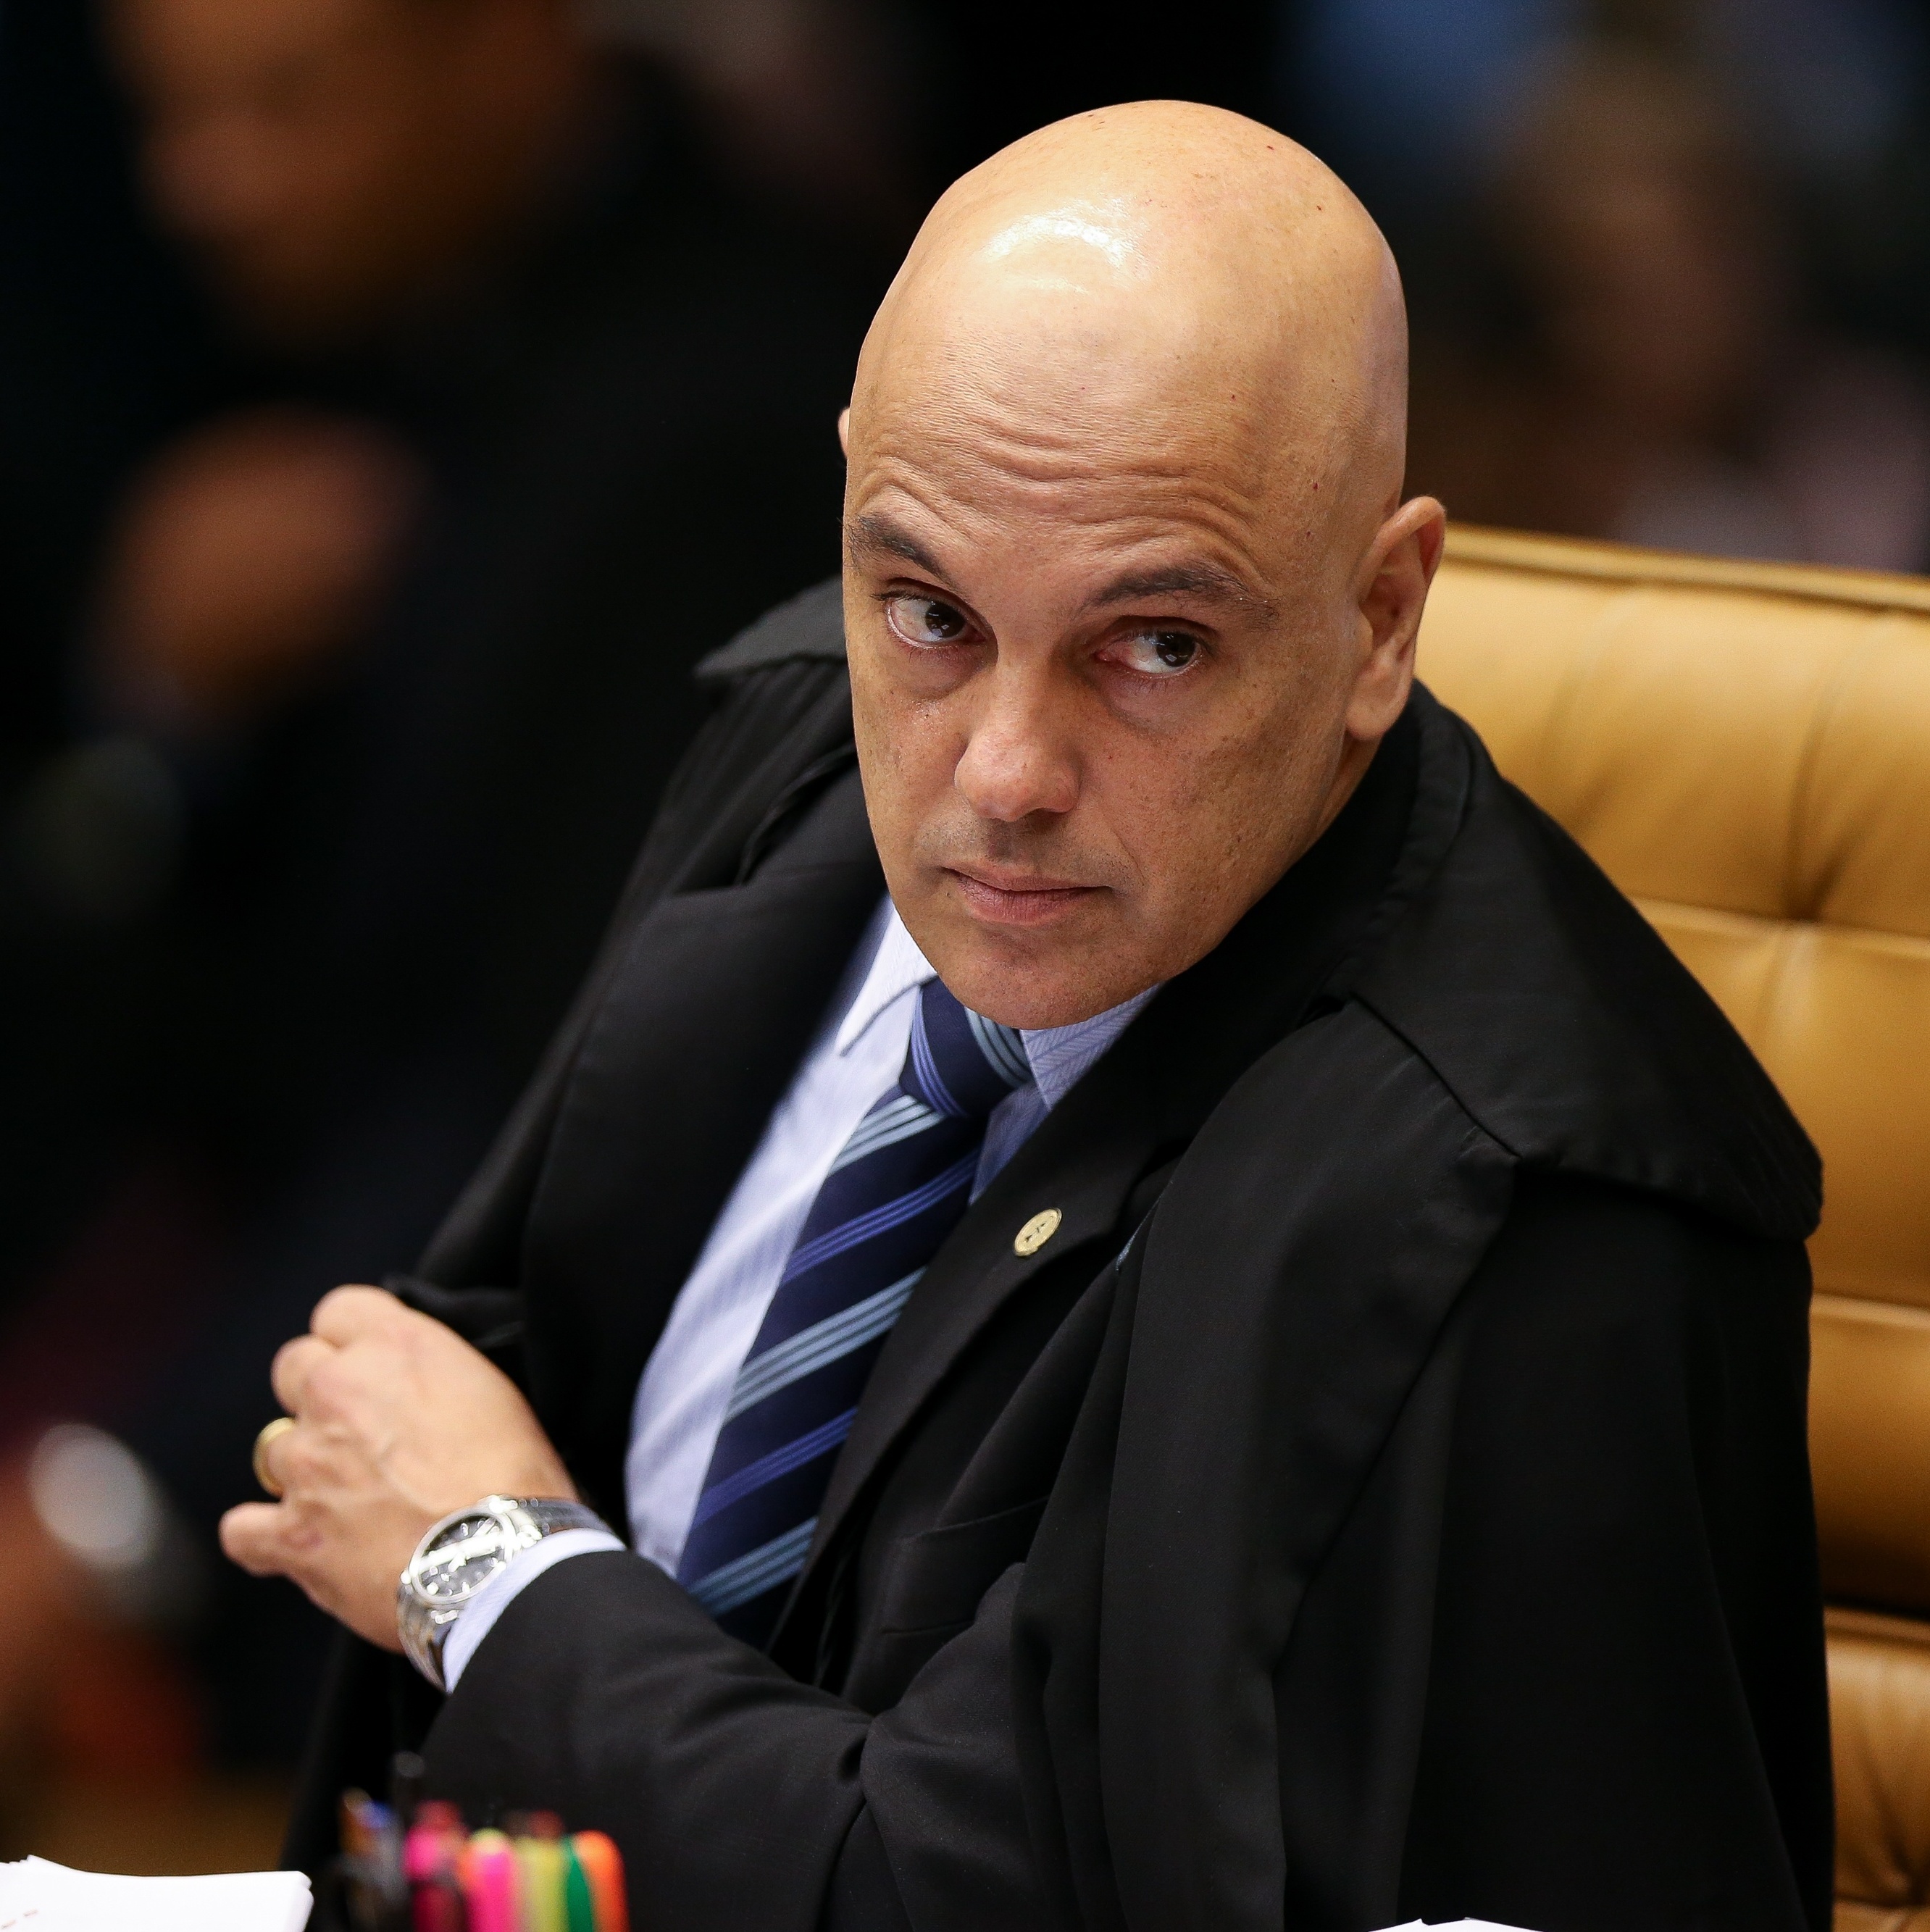 No STF, Alexandre de Moraes diz que Palmeiras não tem mundial